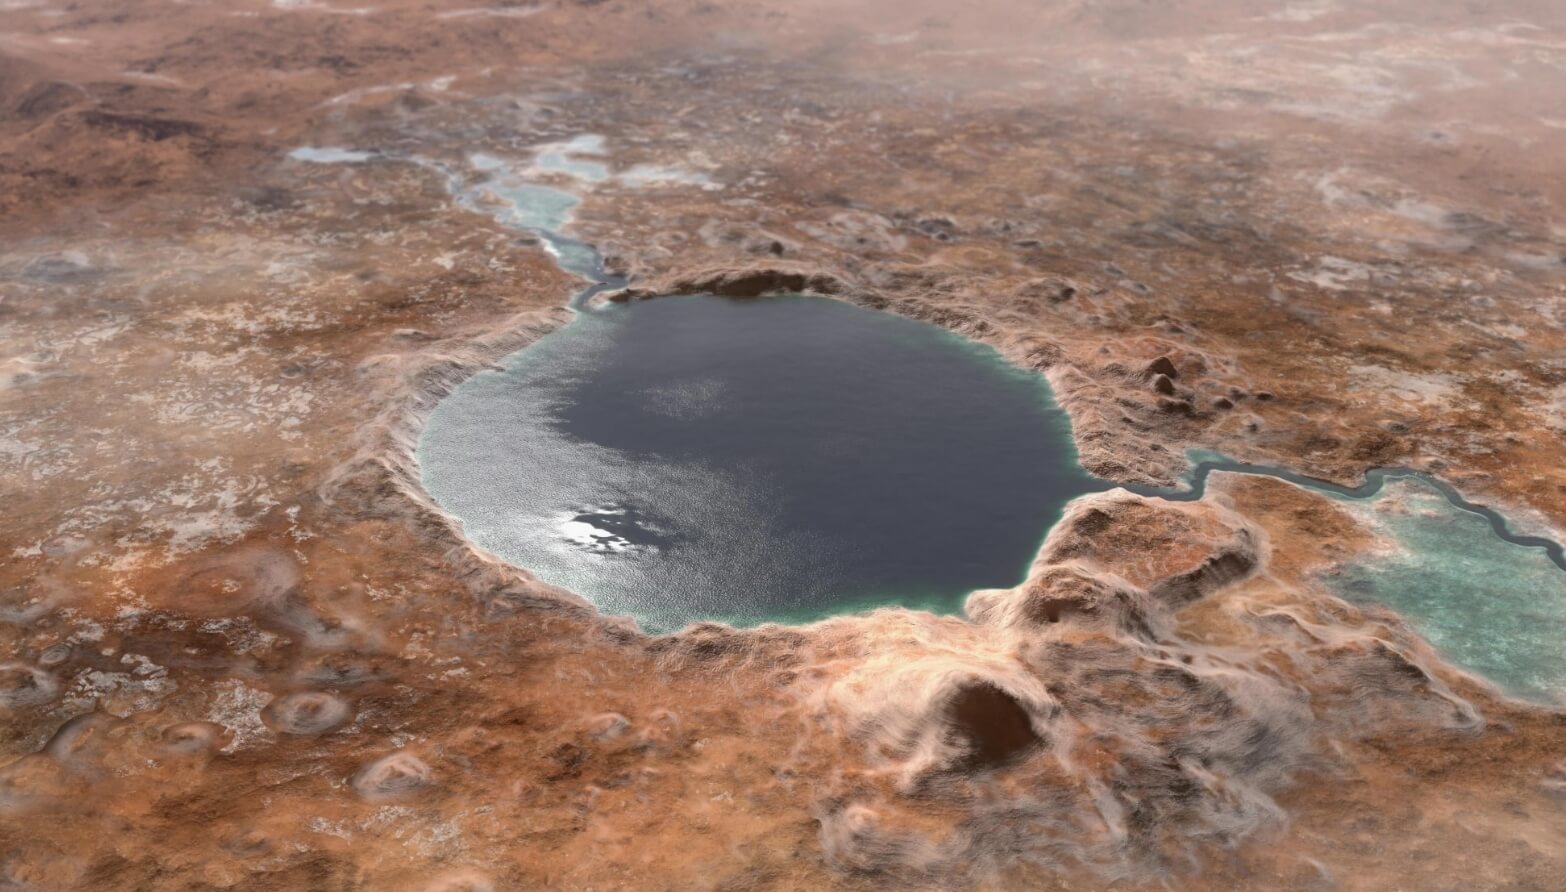 Новые подробности о жизни на Марсе. Миллиарды лет назад кратер Езеро мог выглядеть так. Фото.